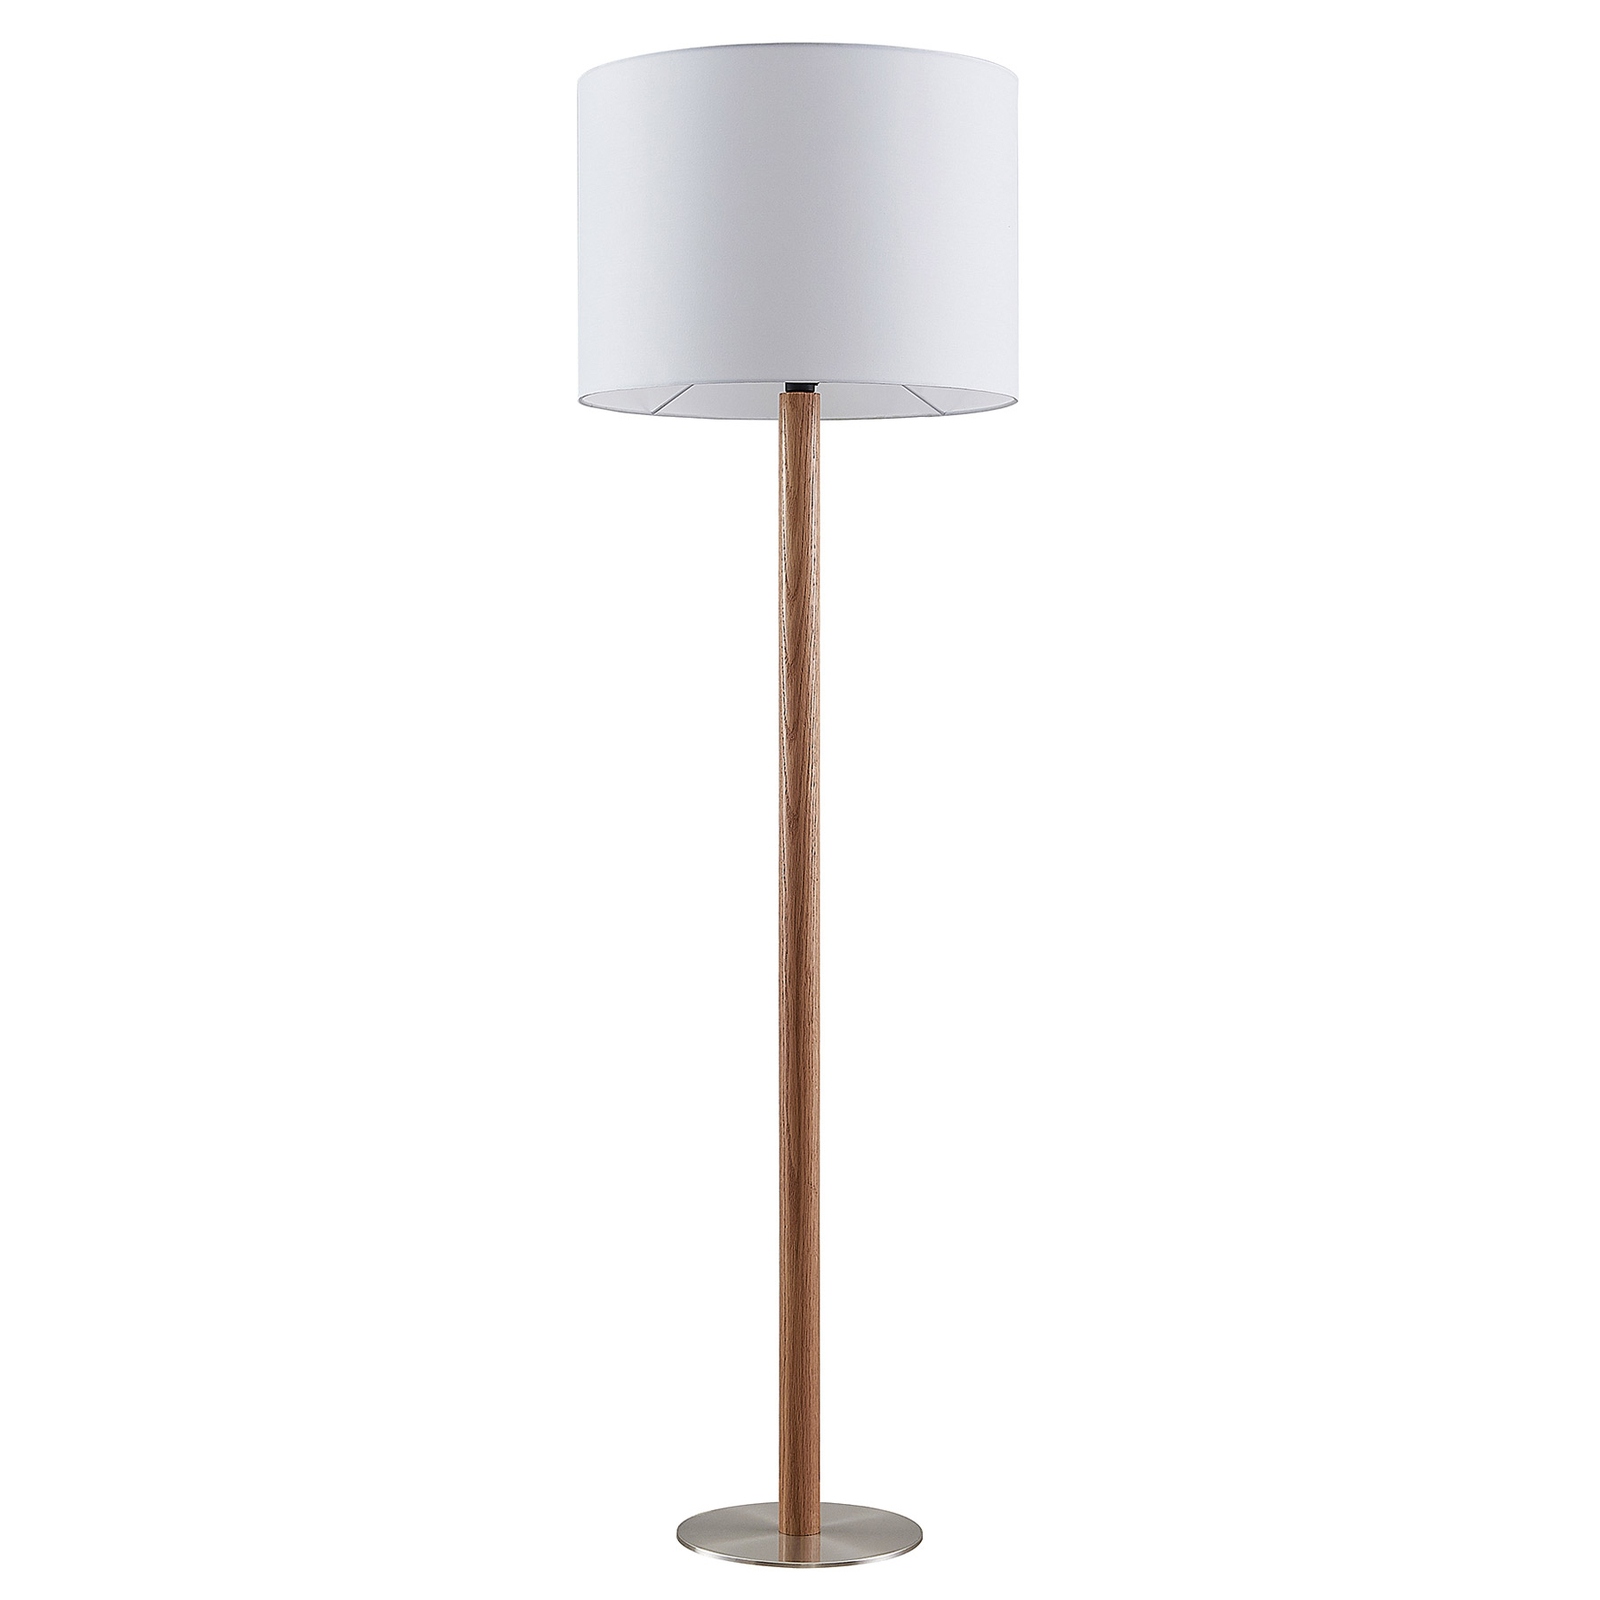 Lucande Heily vloerlamp, cilinder, 35 cm, wit